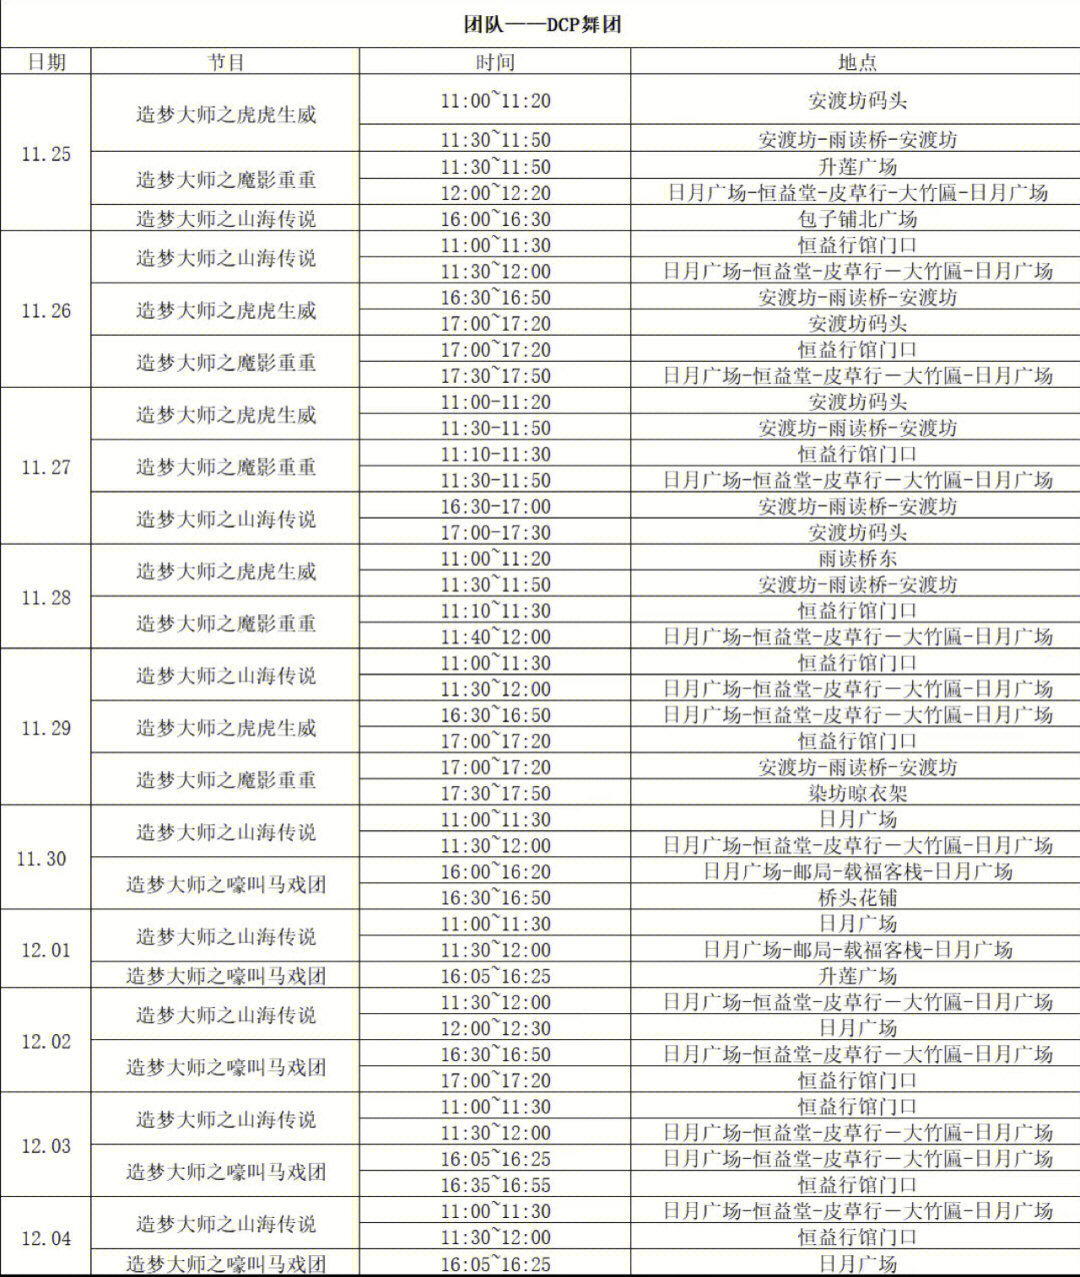 杭州dcp舞剧团乌镇戏剧节演出时间表